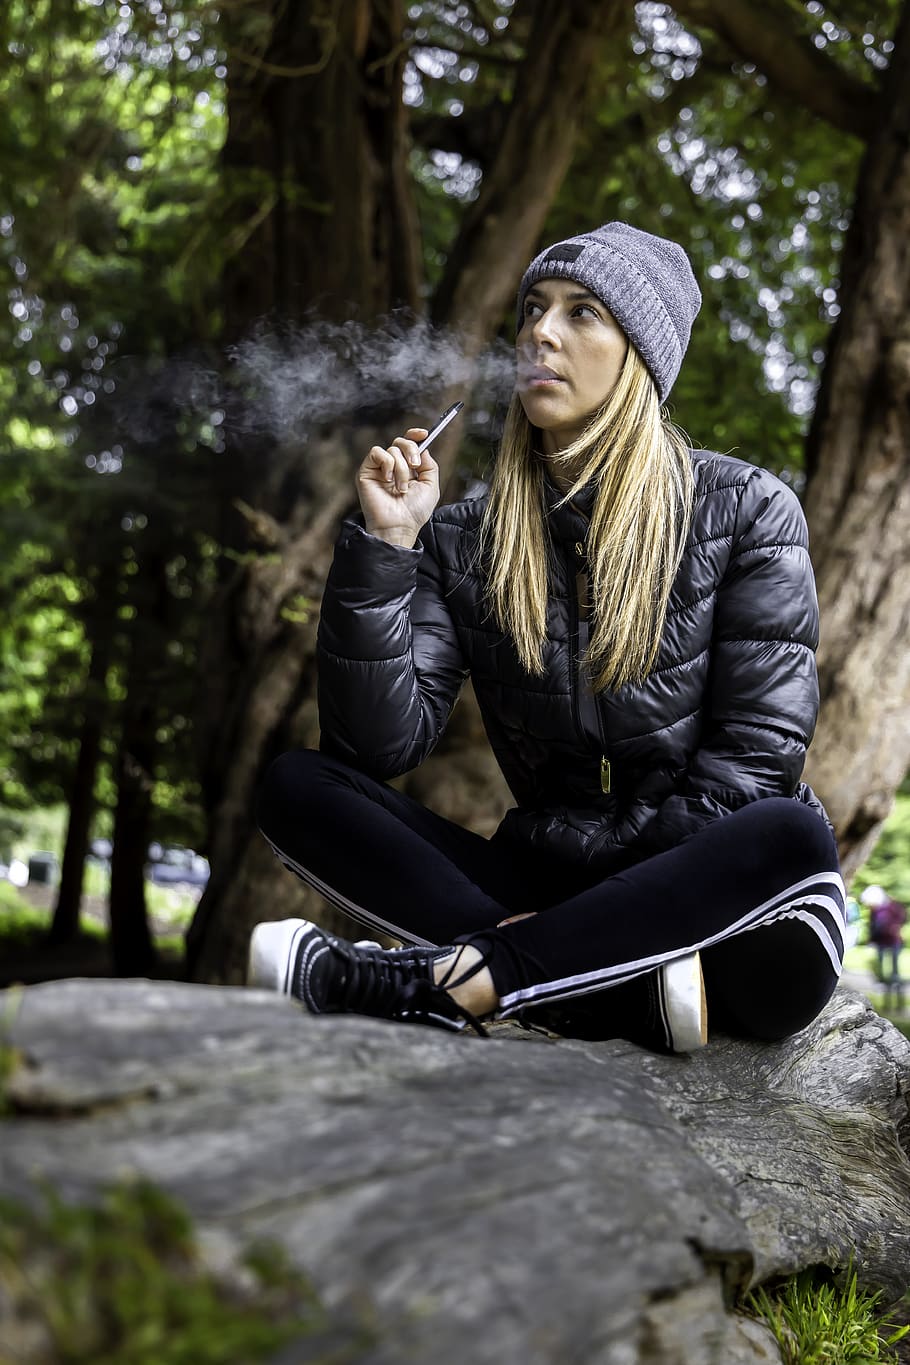 vapor, fumaça, cigarro eletrônico, tabaco, jovem, menina, nicotina, nuvem, parar, fumar